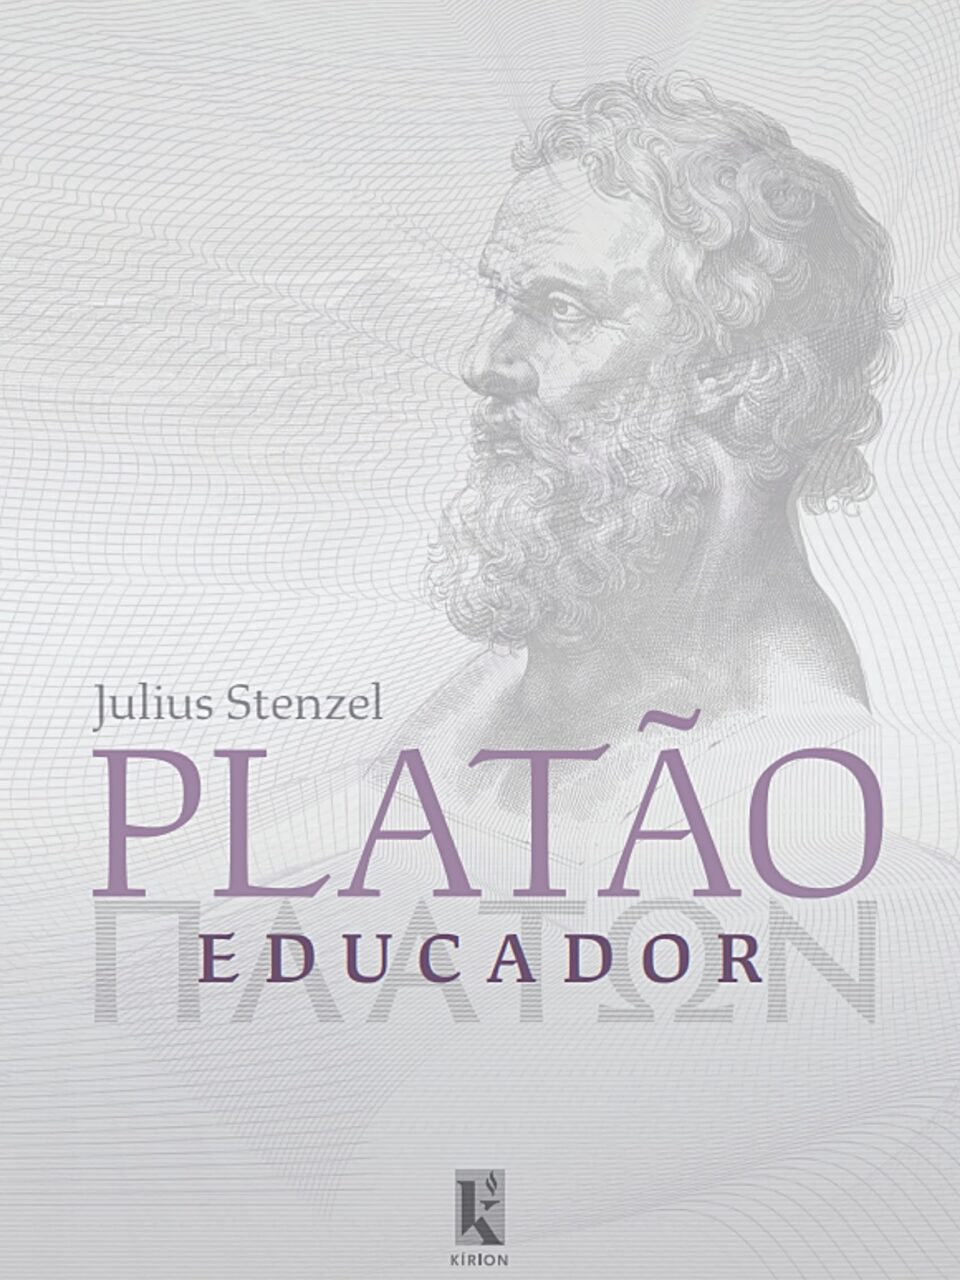 Platão Educador - Julius Stenzel